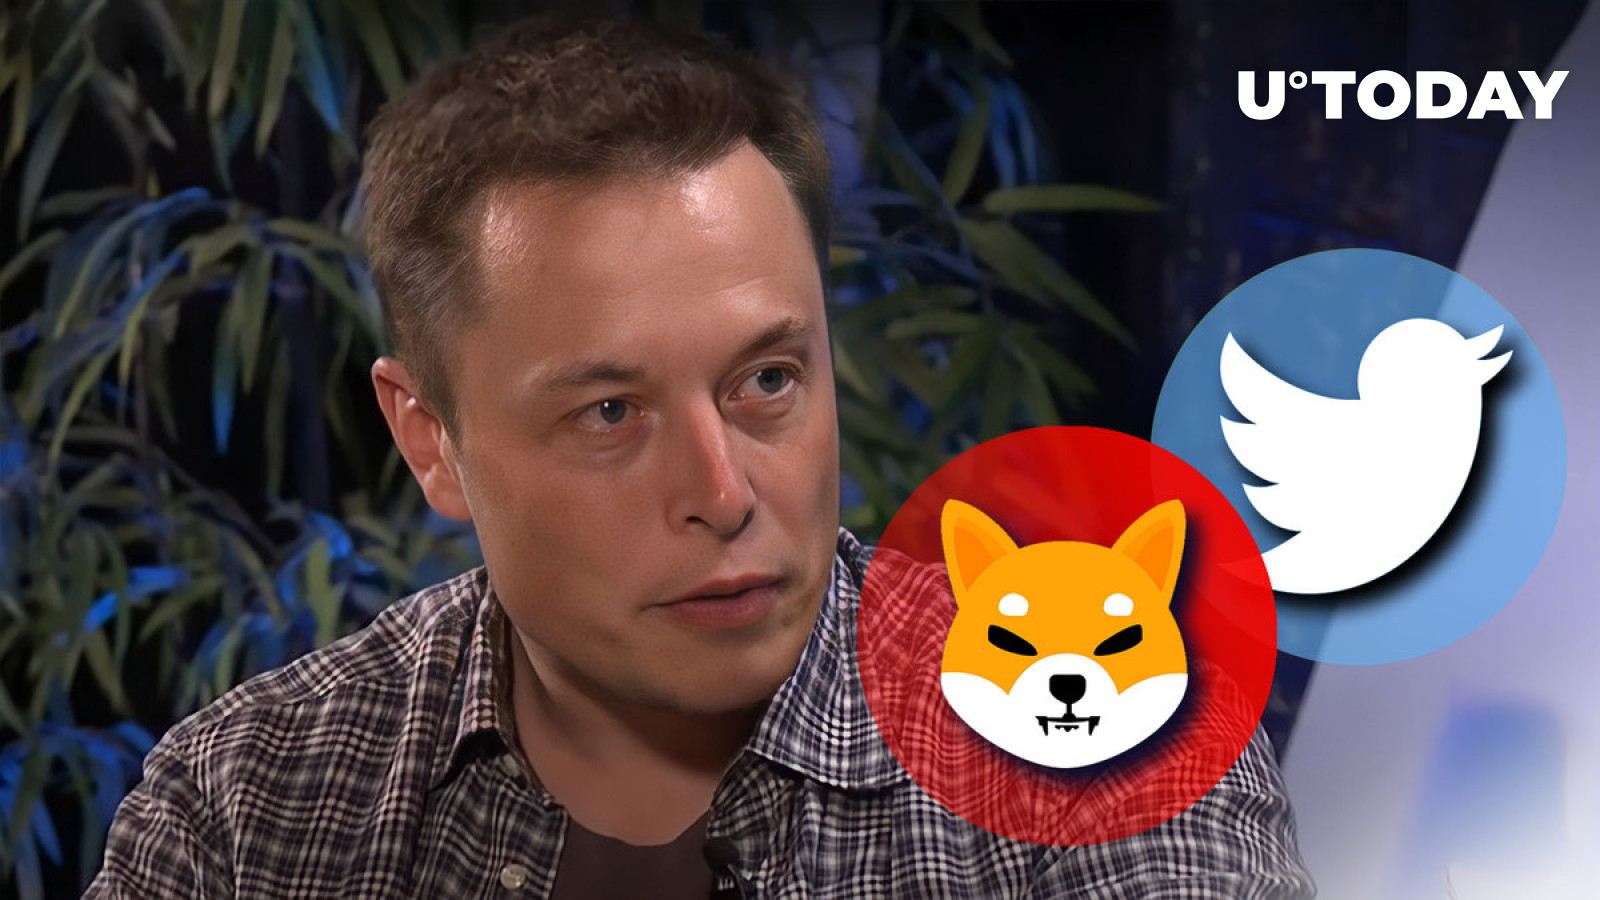 Elon Musk and Shytoshi Kusama Post Same Symbol on Twitter, Community Puzzled